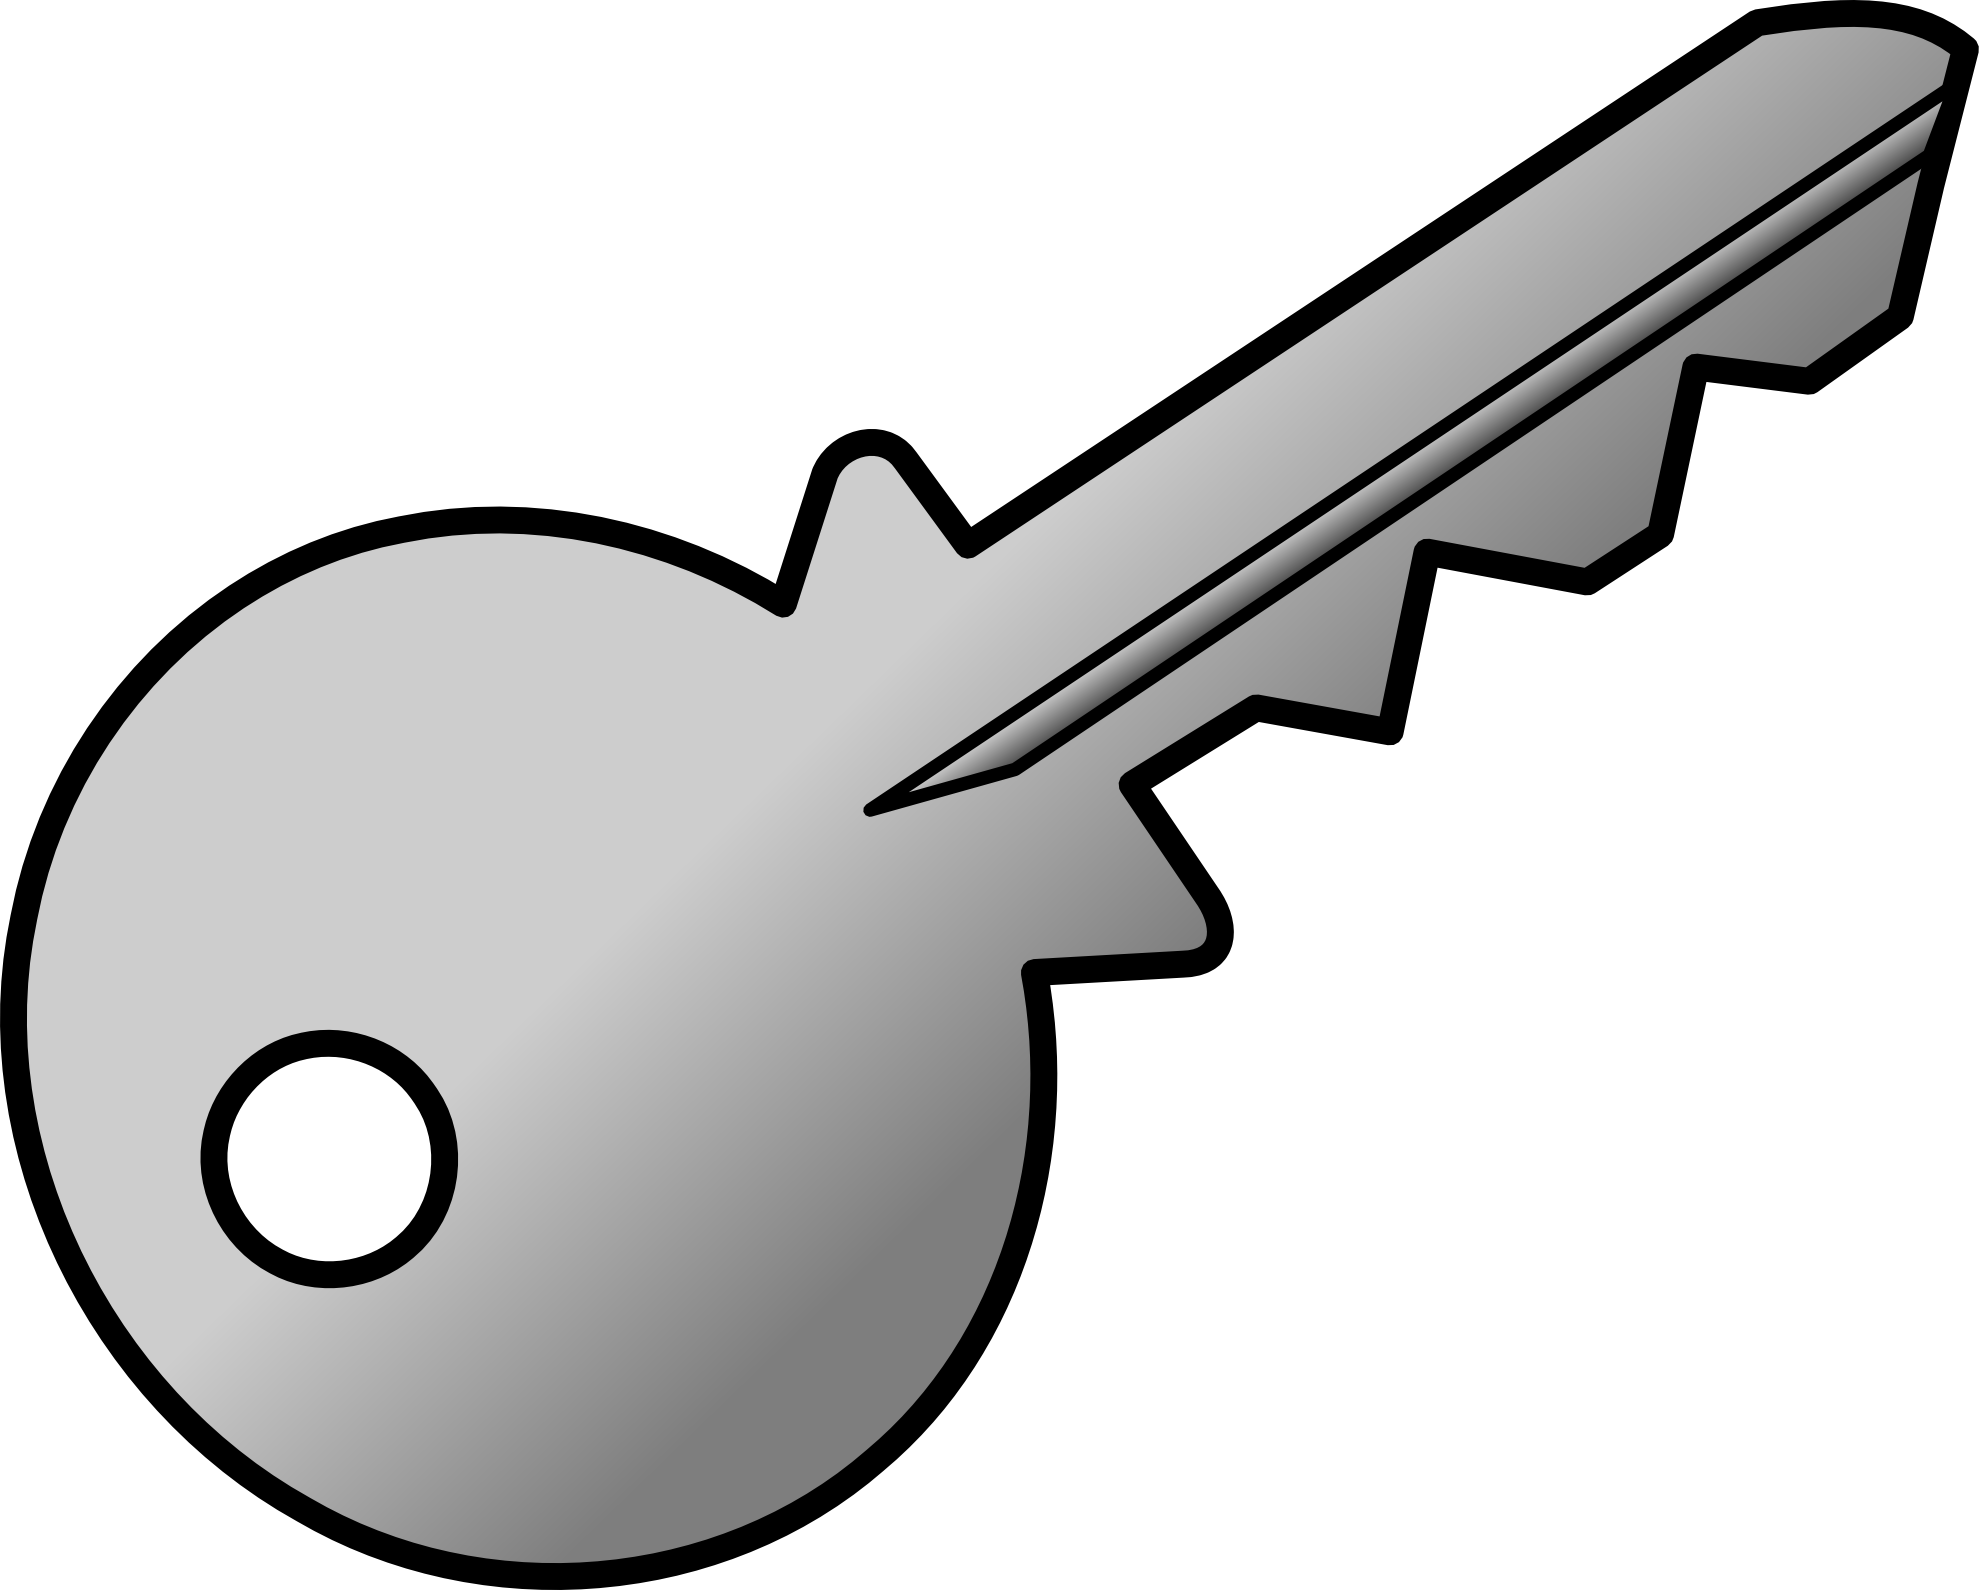 Best Photos of Door Key Clip Art - Cartoon Key Clip Art, Door Lock ...